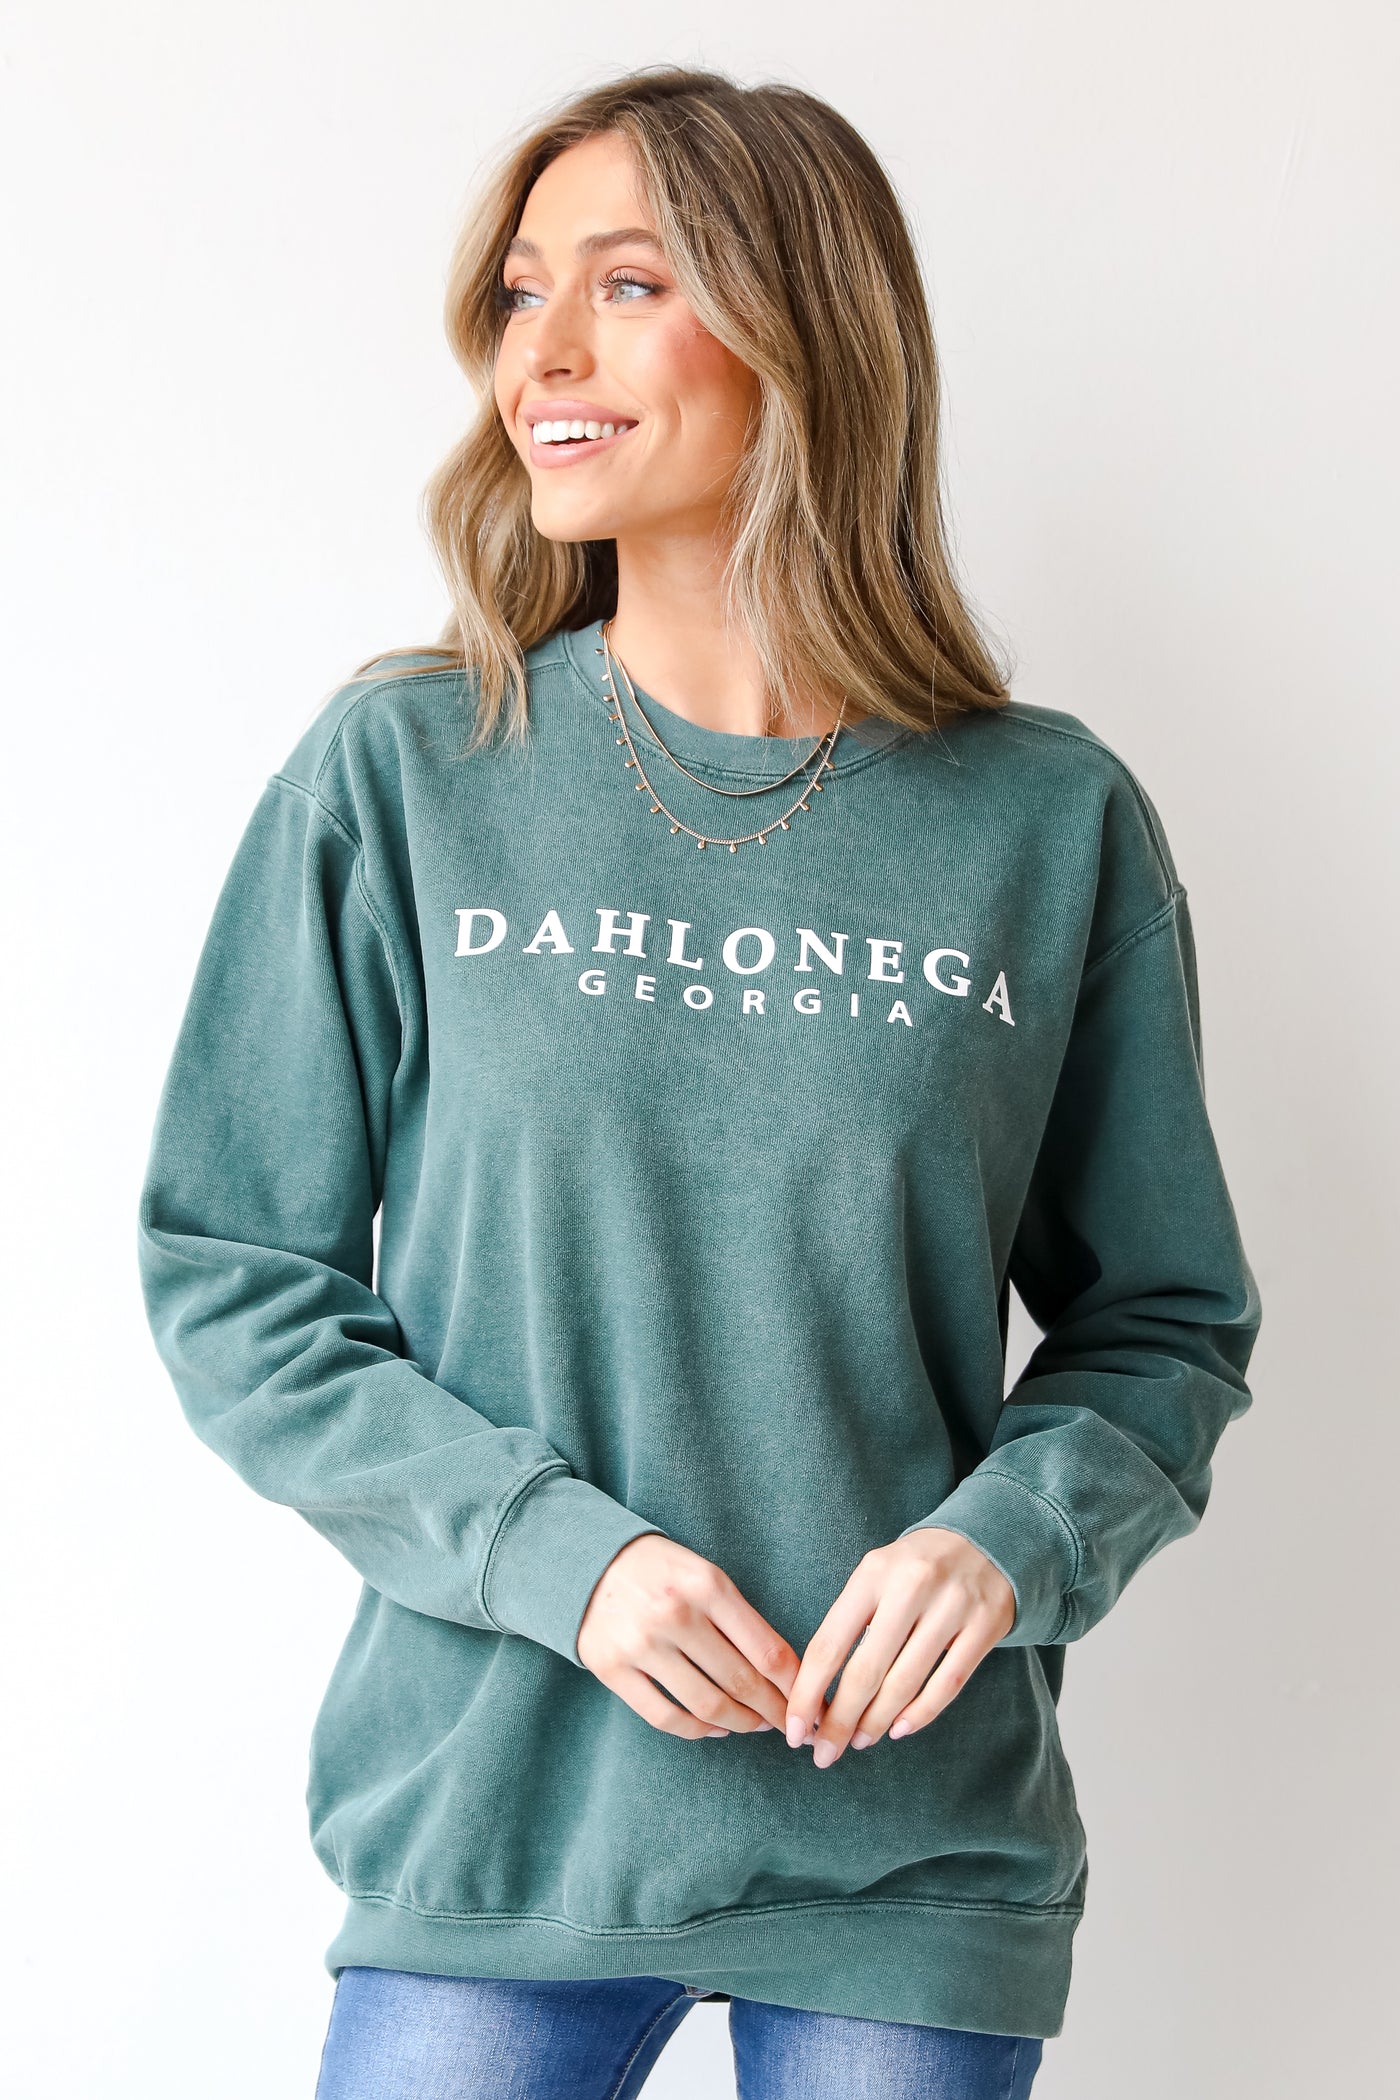 Teal Dahlonega Georgia Pullover. Graphic Sweatshirt. Dahlonega Sweatshirt. Oversized Graphic